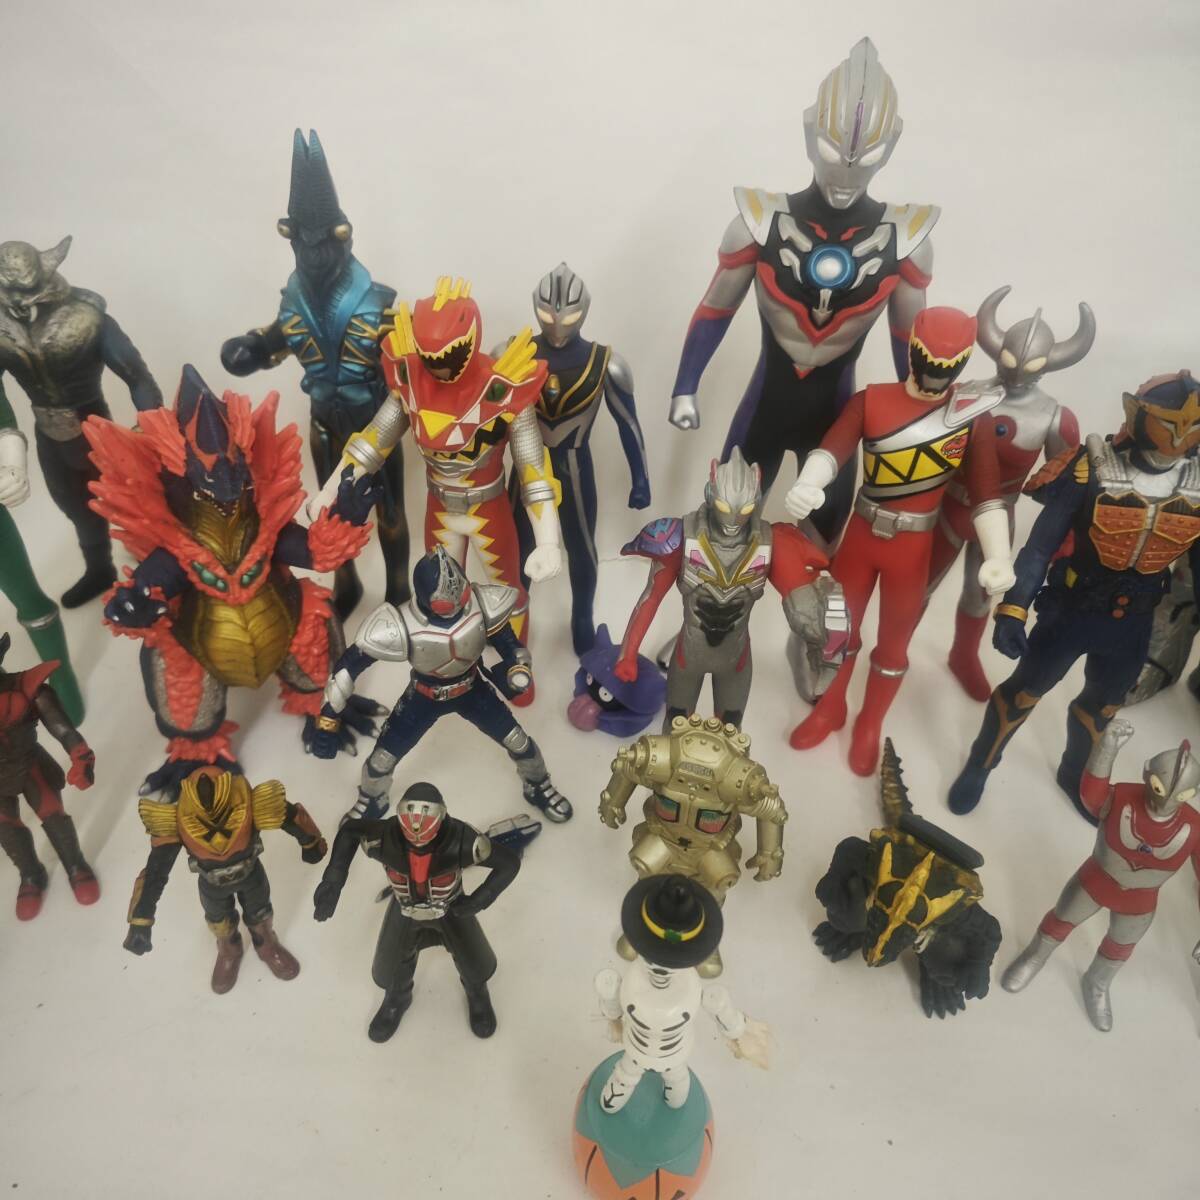  спецэффекты серия sofvi кукла суммировать Squadron было использовано Kamen Rider Ultraman монстр 